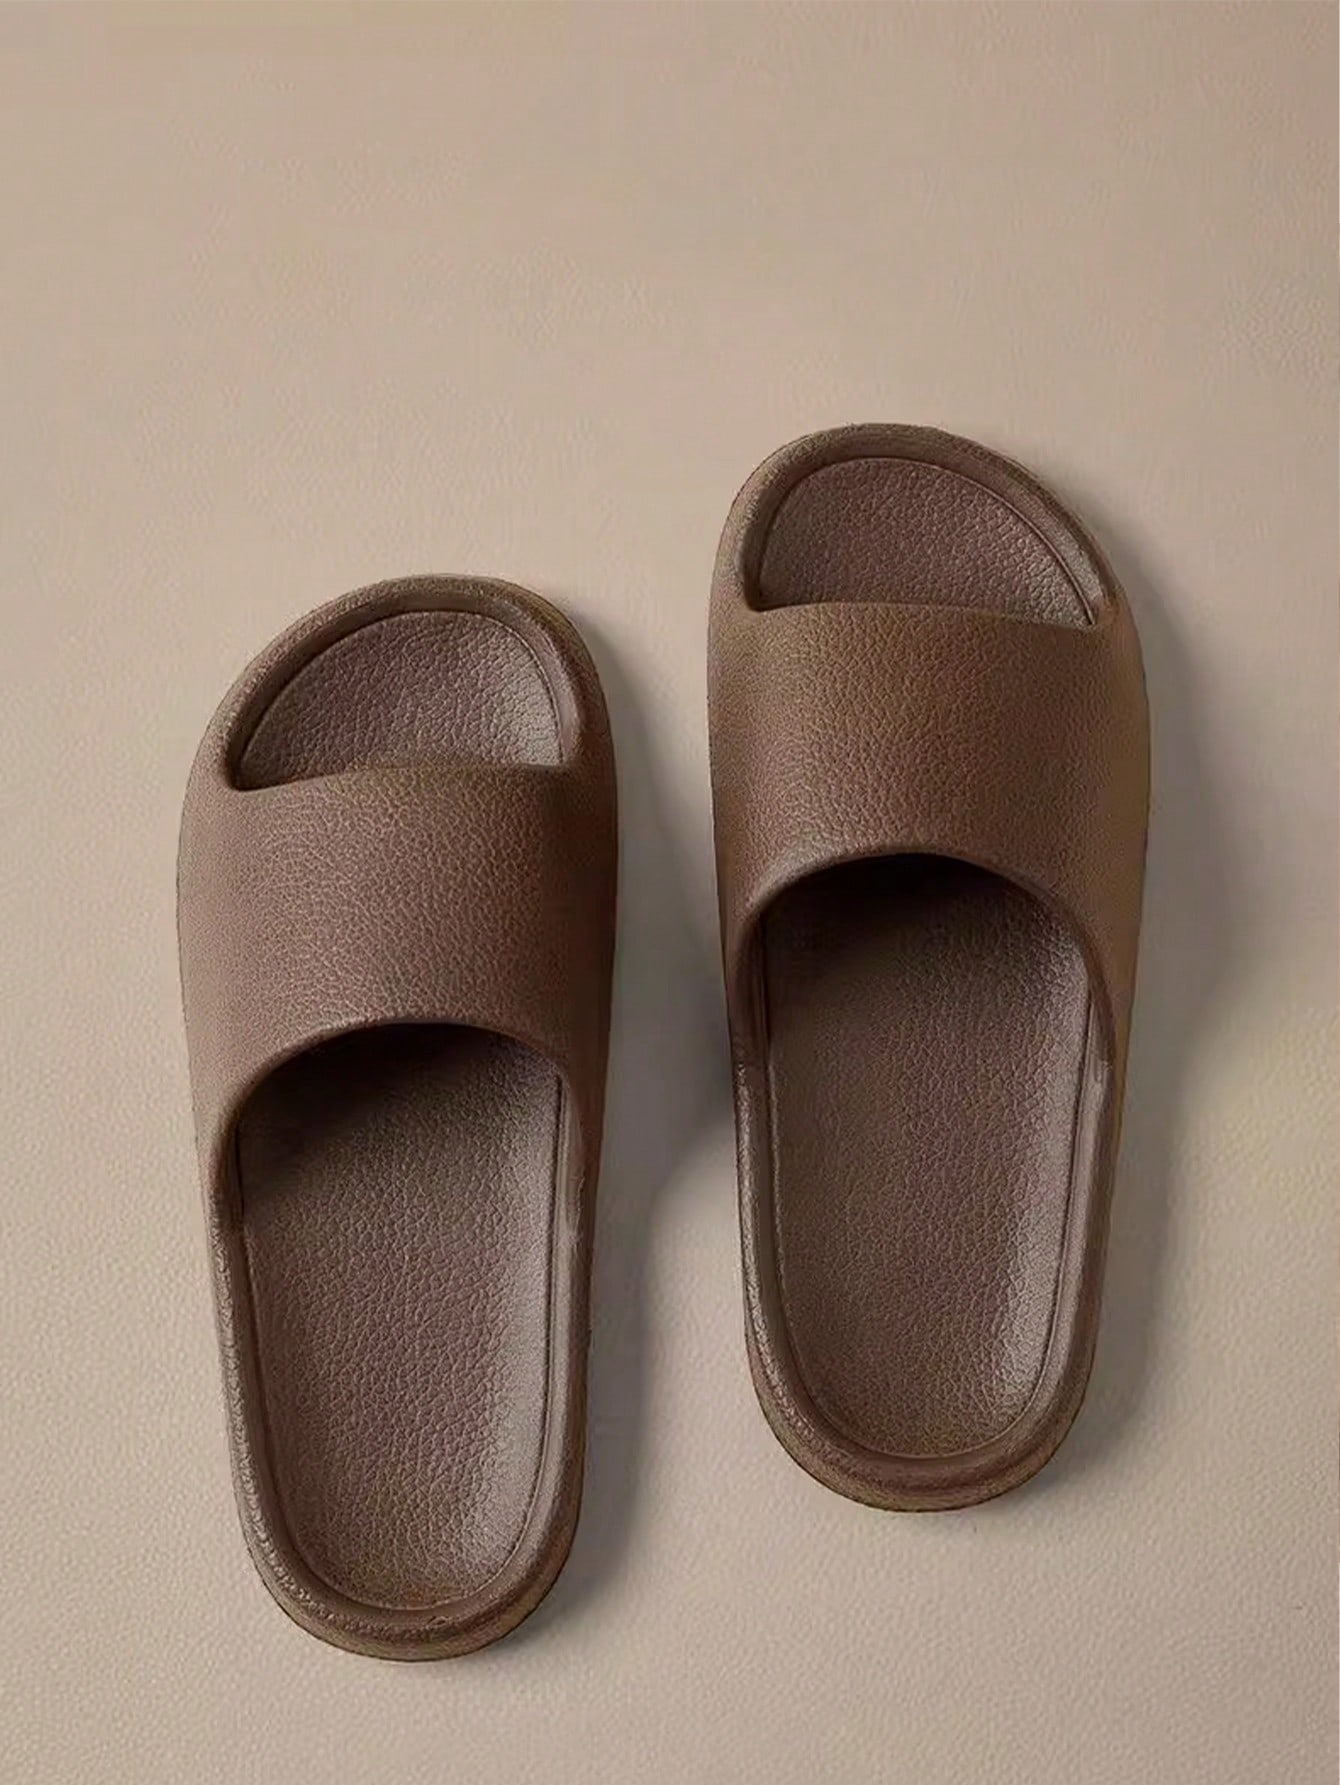 Парные домашние тапочки серии Melard/уличные сандалии для мужчин, коричневый